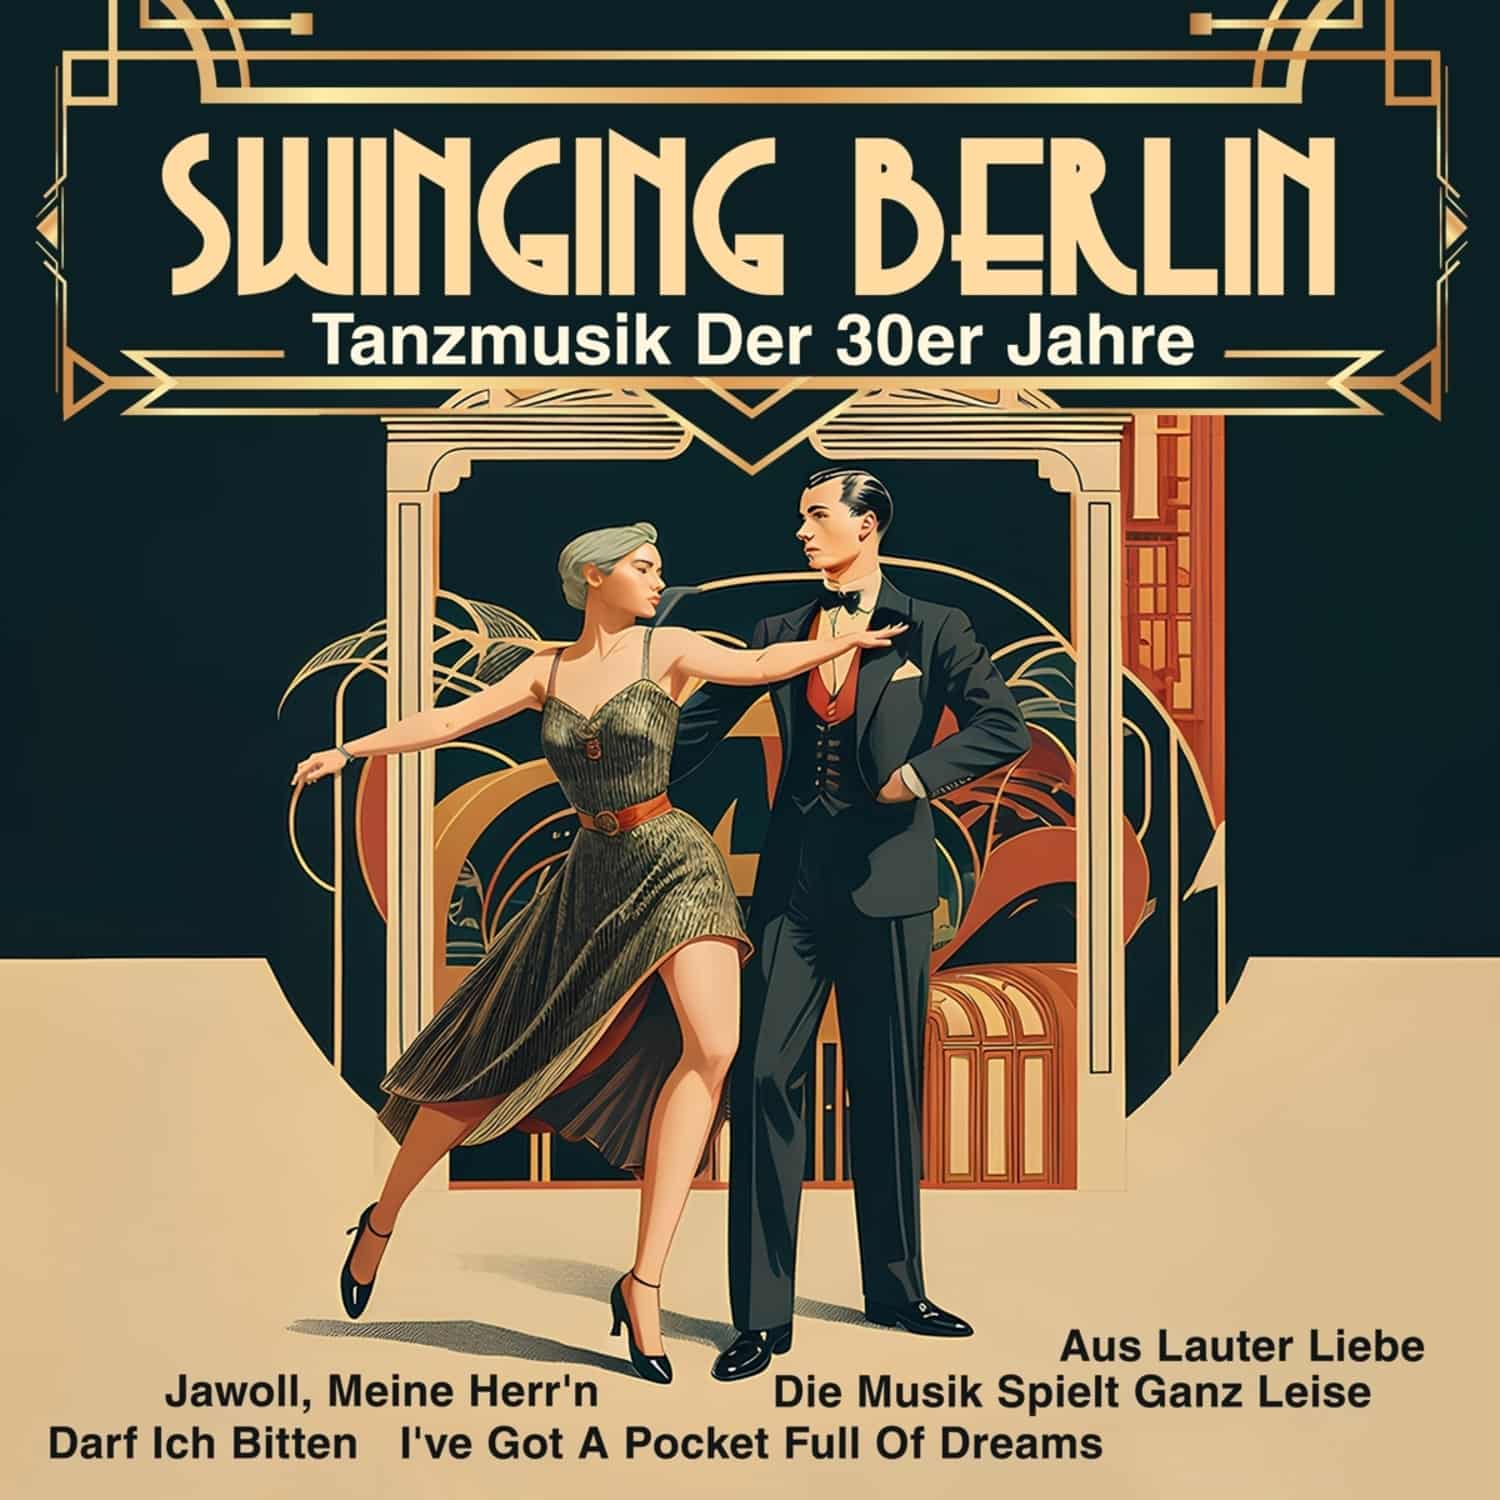 Goldene Sieben - SWINGING BERLIN - TANZMUSIK DER 30ER JAHRE 